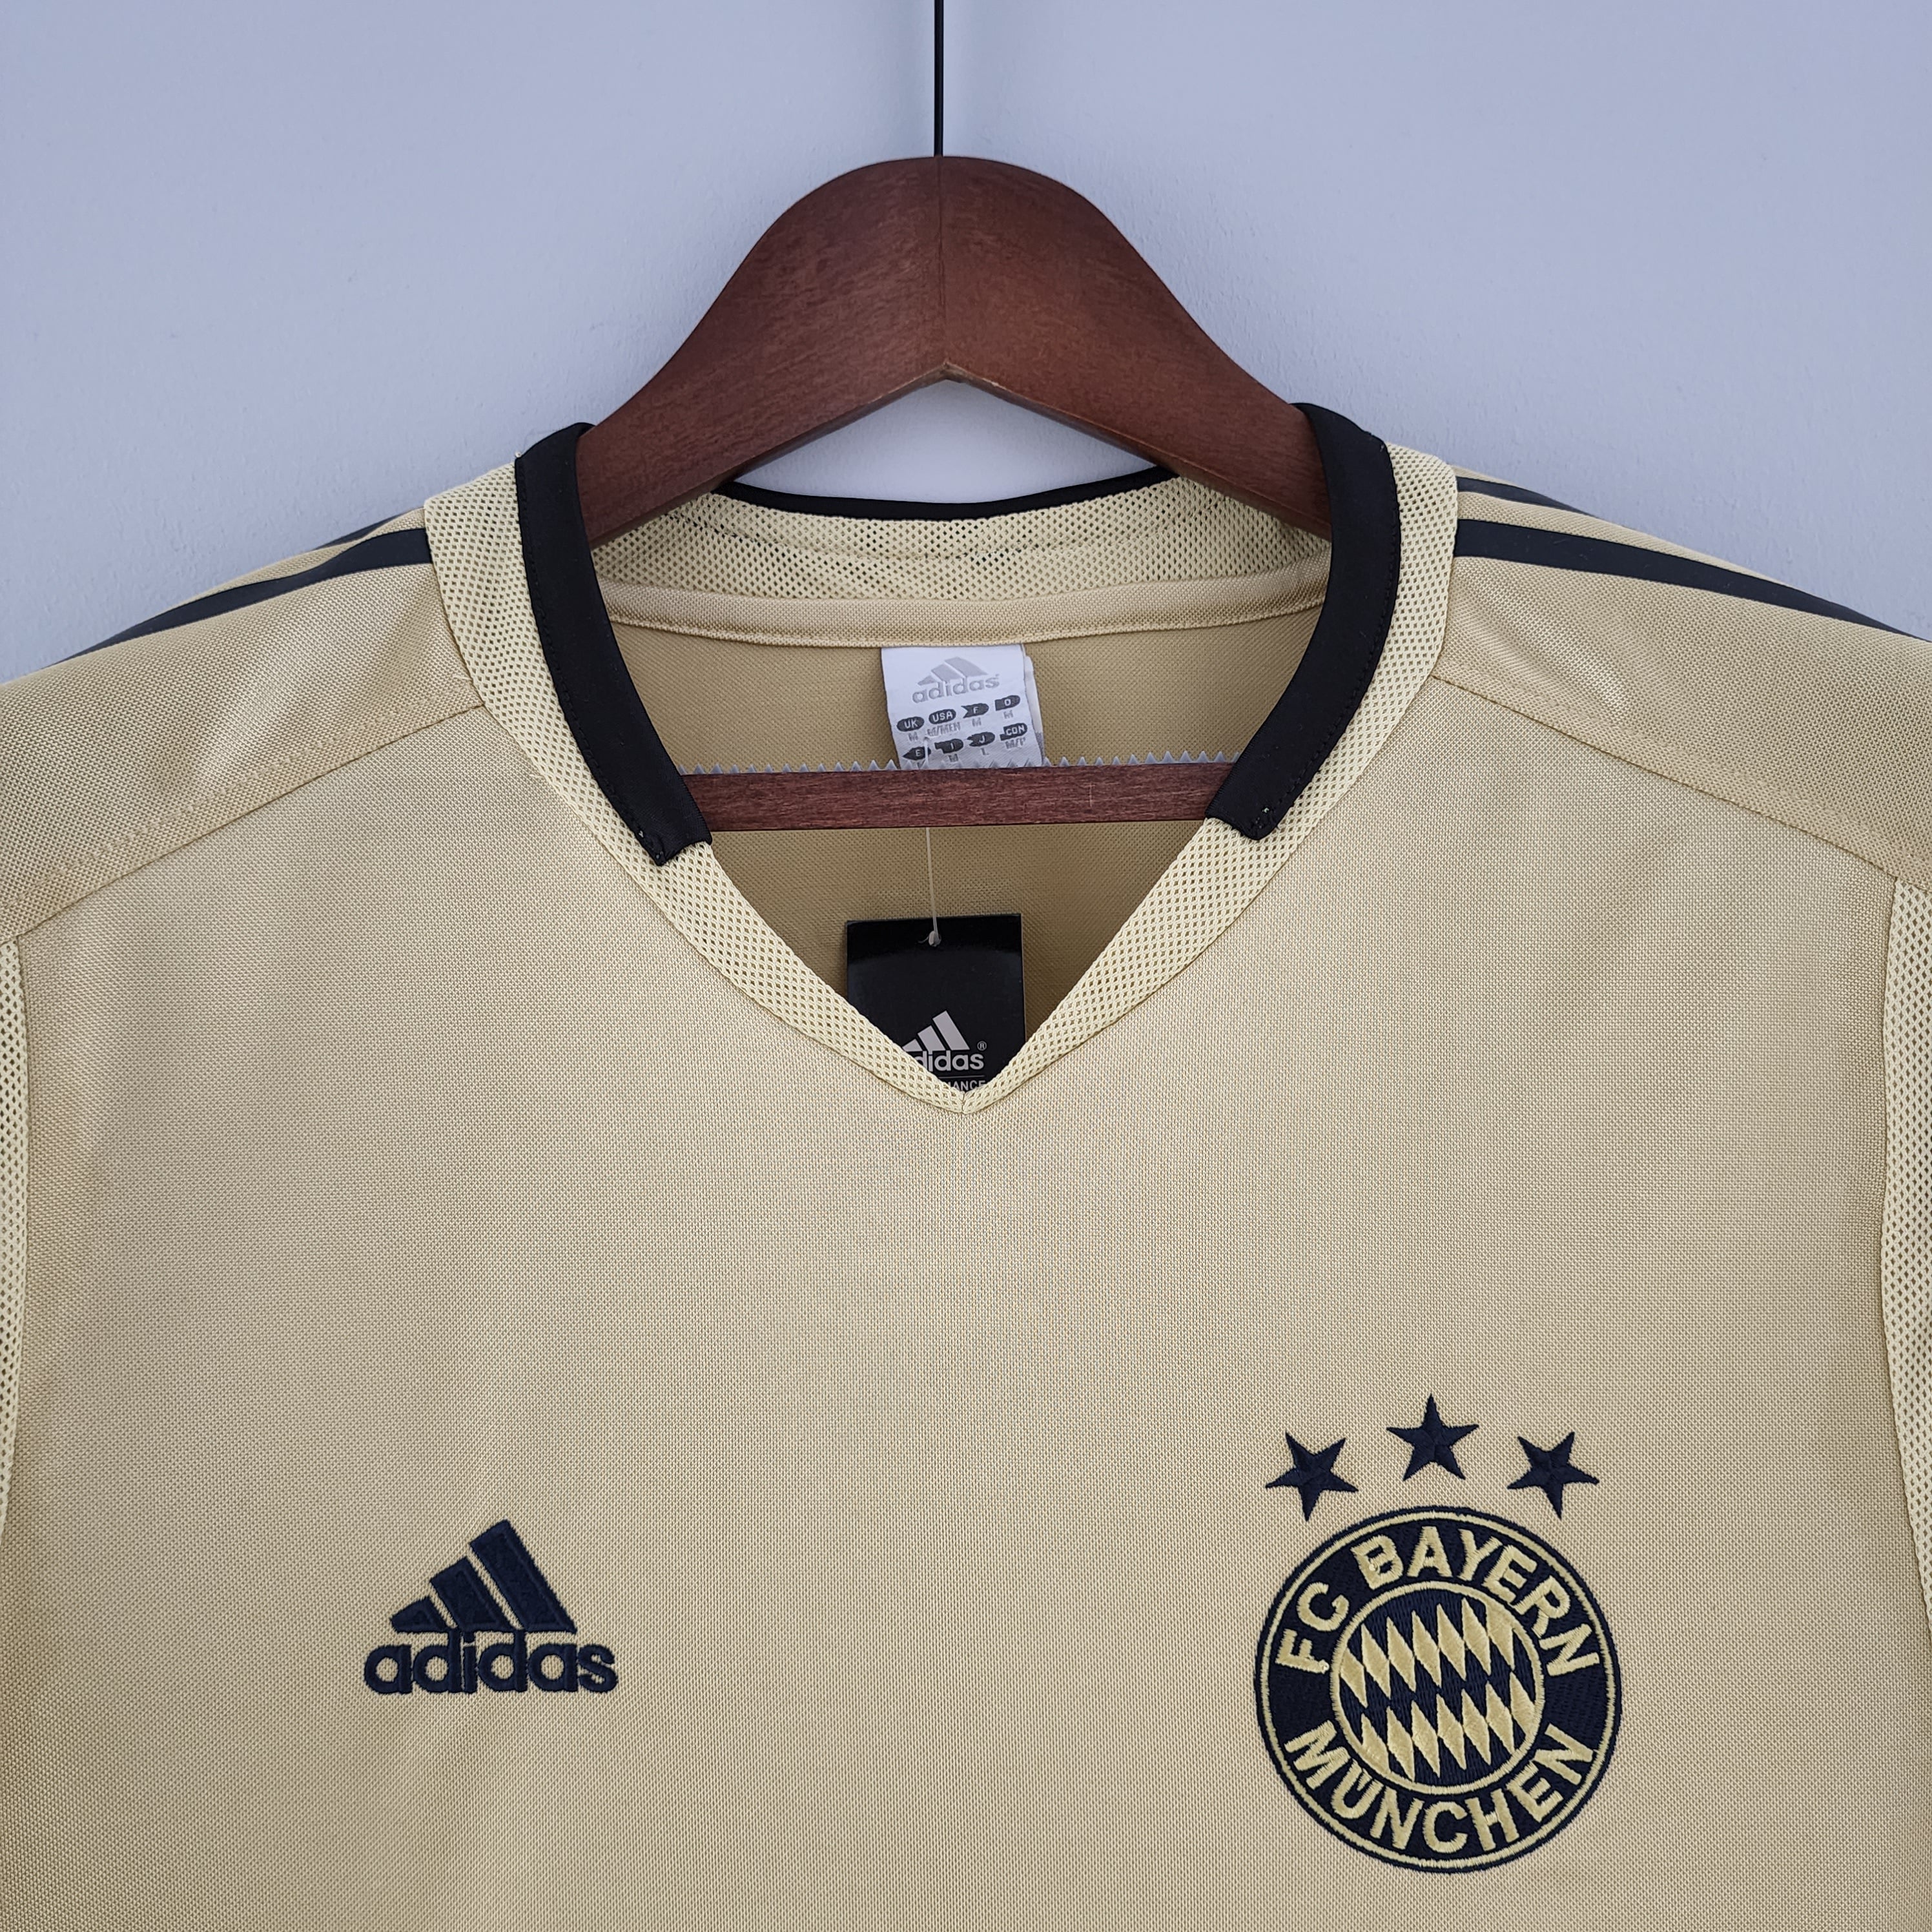 Bayern Munich - 04/05 Vintage